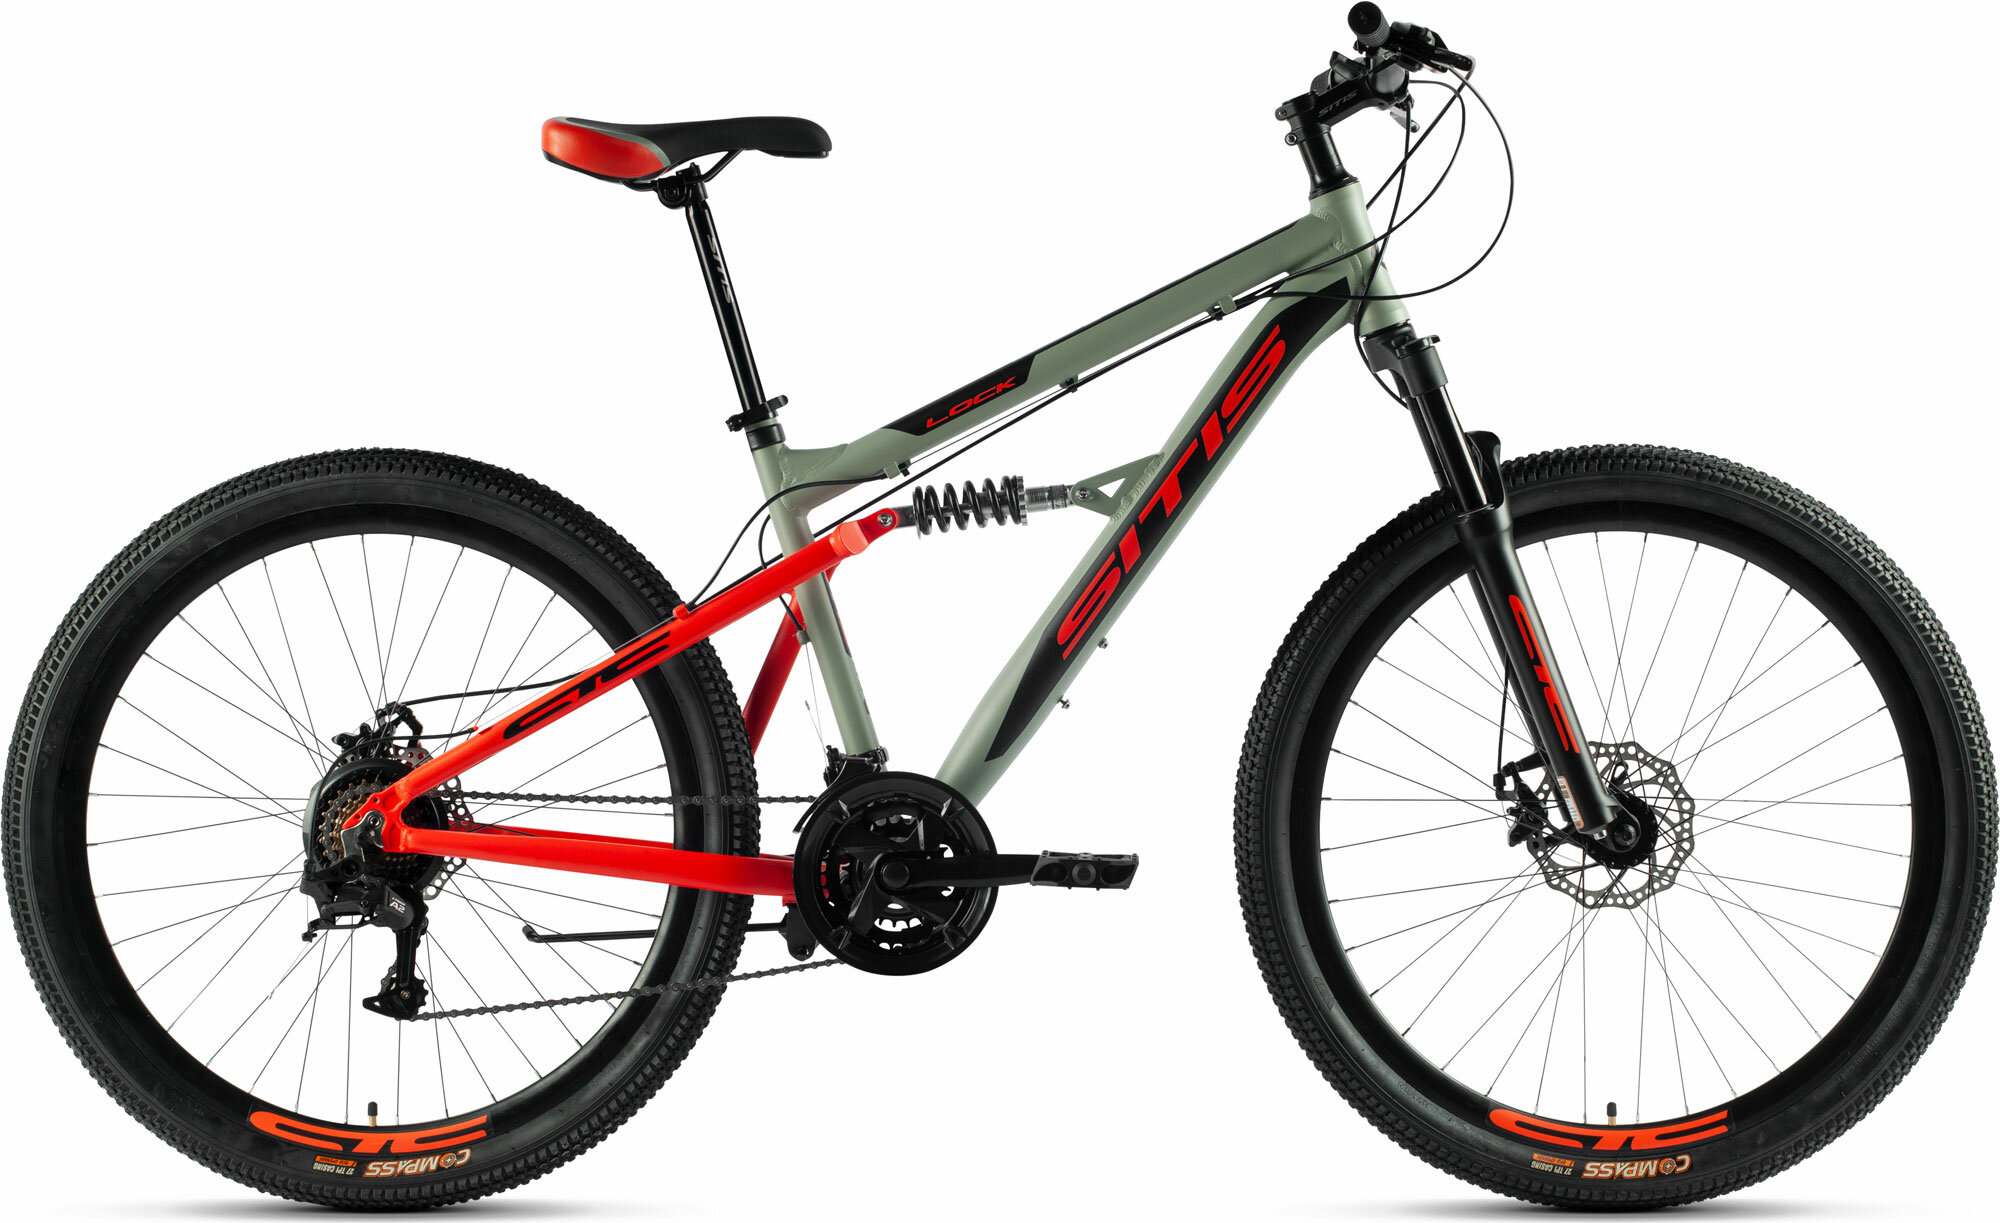 Велосипед горный SITIS LOCK 27.5" (2023), full-suspension, взрослый, мужской, алюминиевая рама, 21 скорость, дисковые механические тормоза, цвет Grey-Red-Black, серый/красный/черный цвет, размер рамы 19", для роста 180-190 см